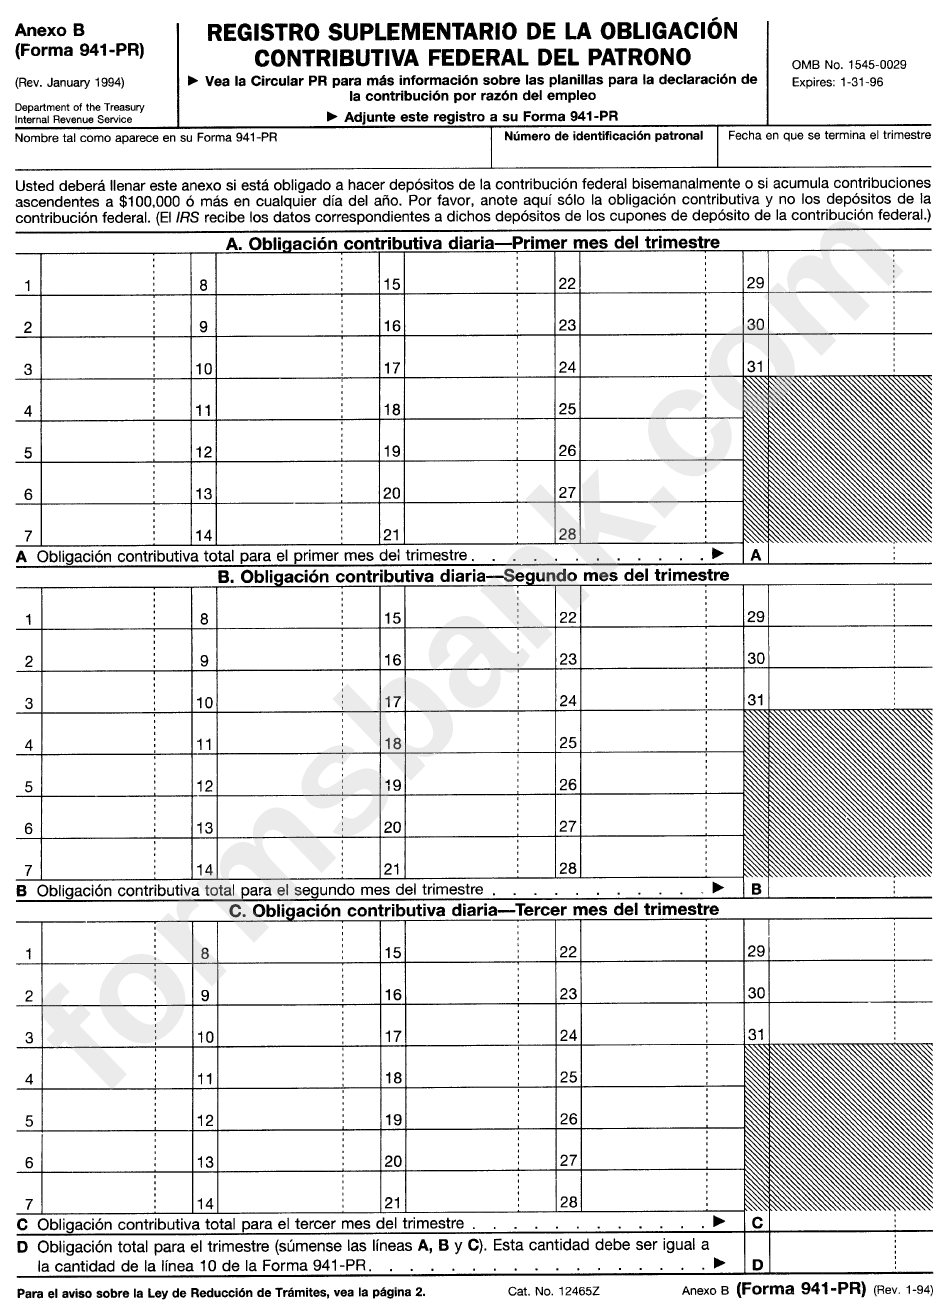 Anexo B (Formulario 941-Pr) - Registro De La Obligacion Contributiva Para Los Depositantes De Itinerario Bisemanal - 1996